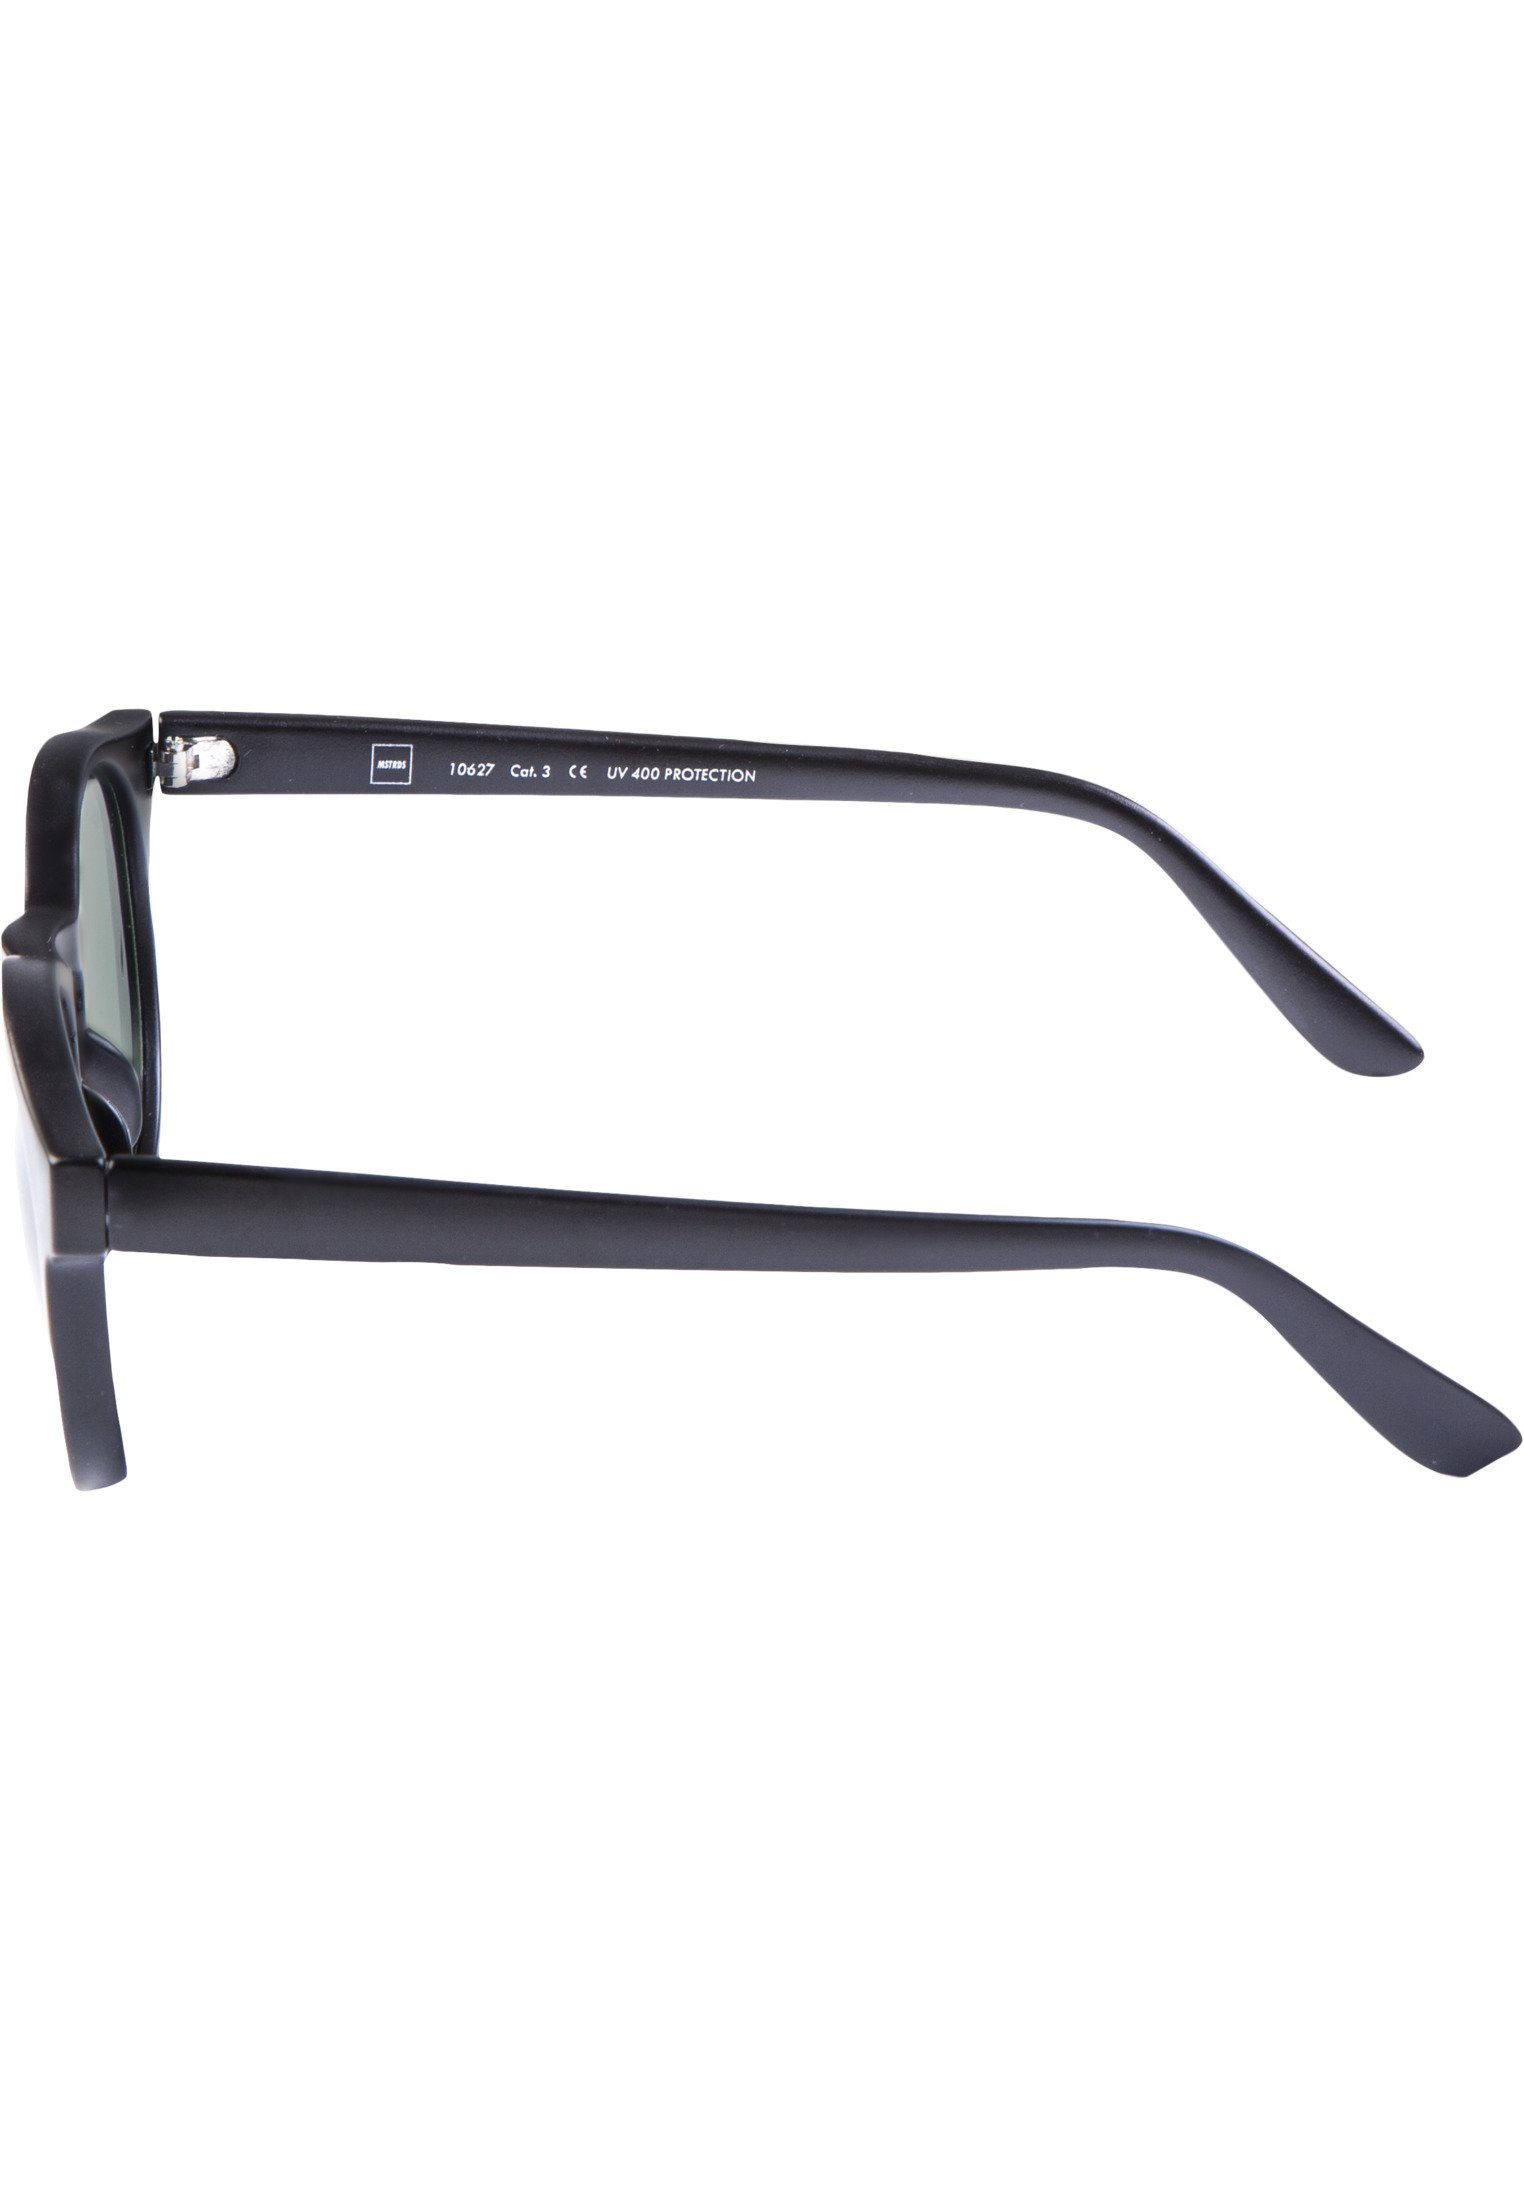 Sunglasses Sunrise MSTRDS blk/grn Accessoires Sonnenbrille